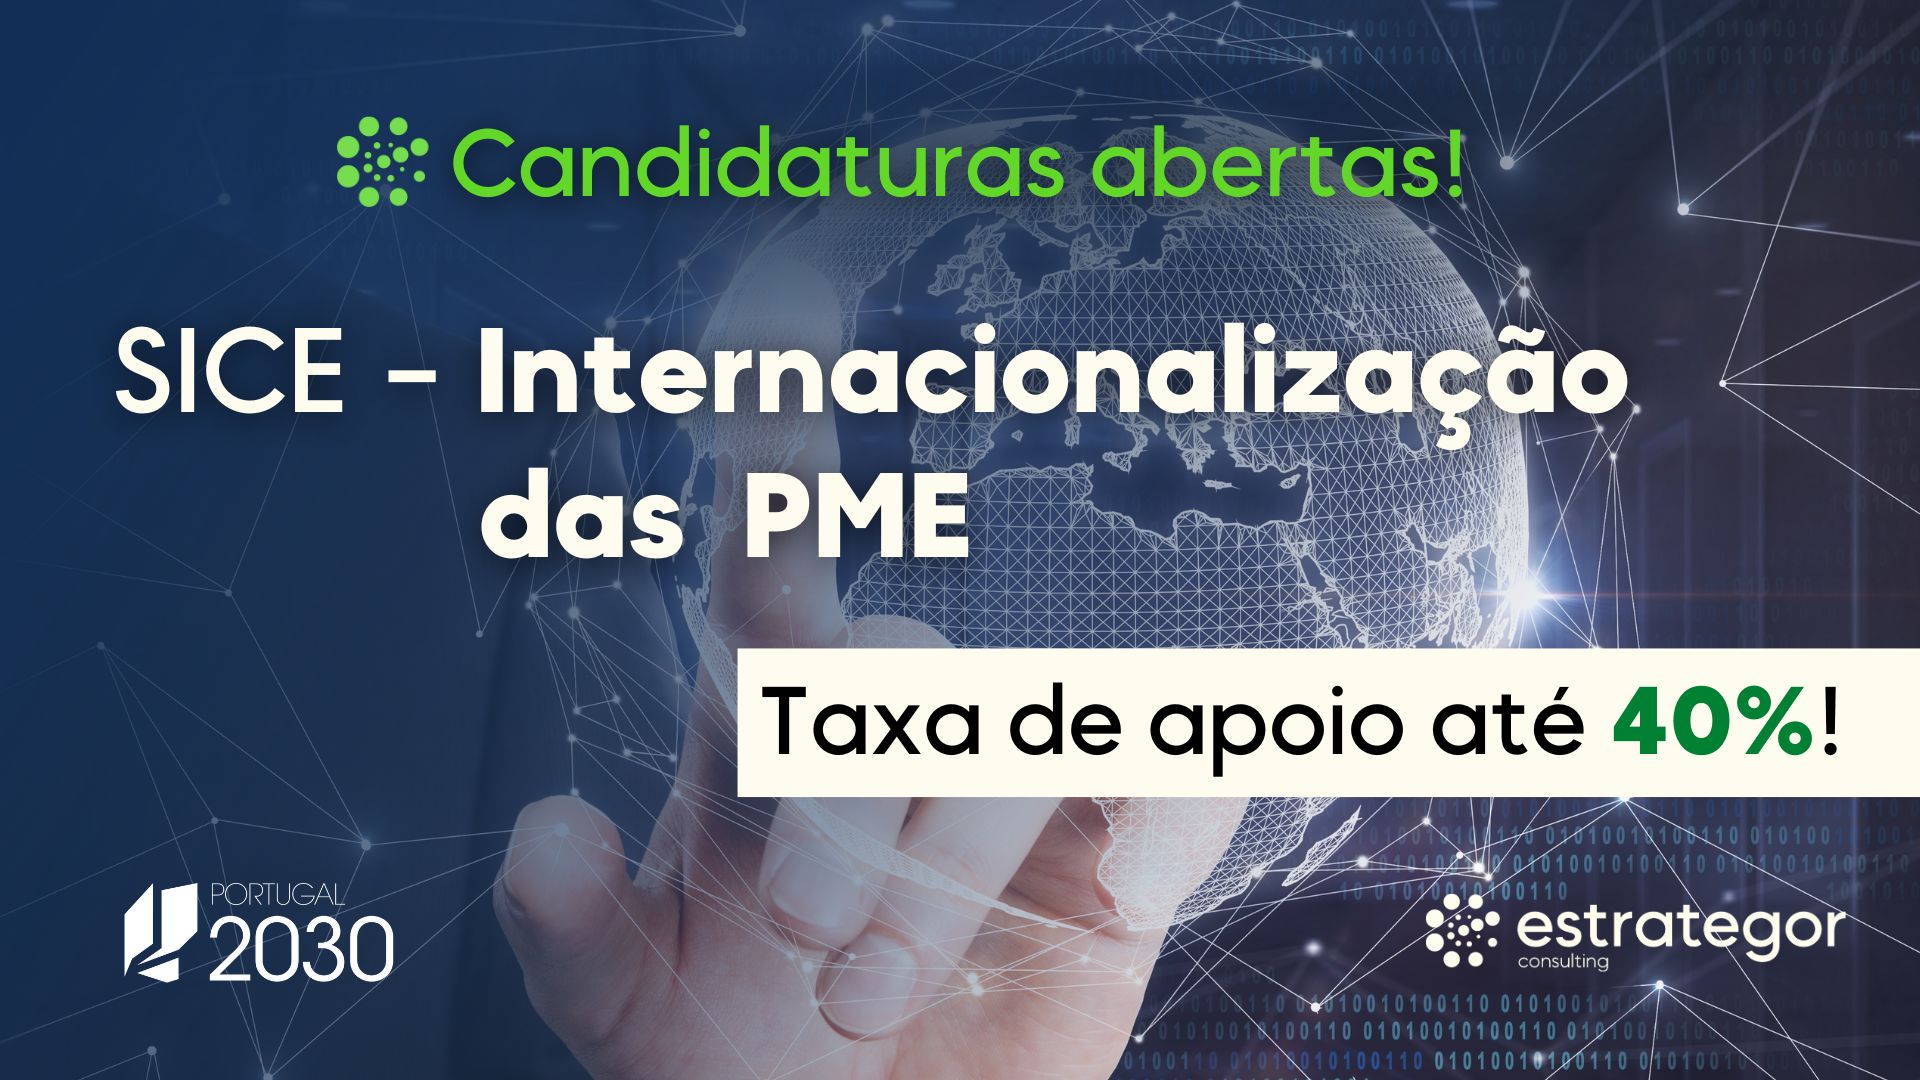 candidaturas abertas internacionalizacao das pme.